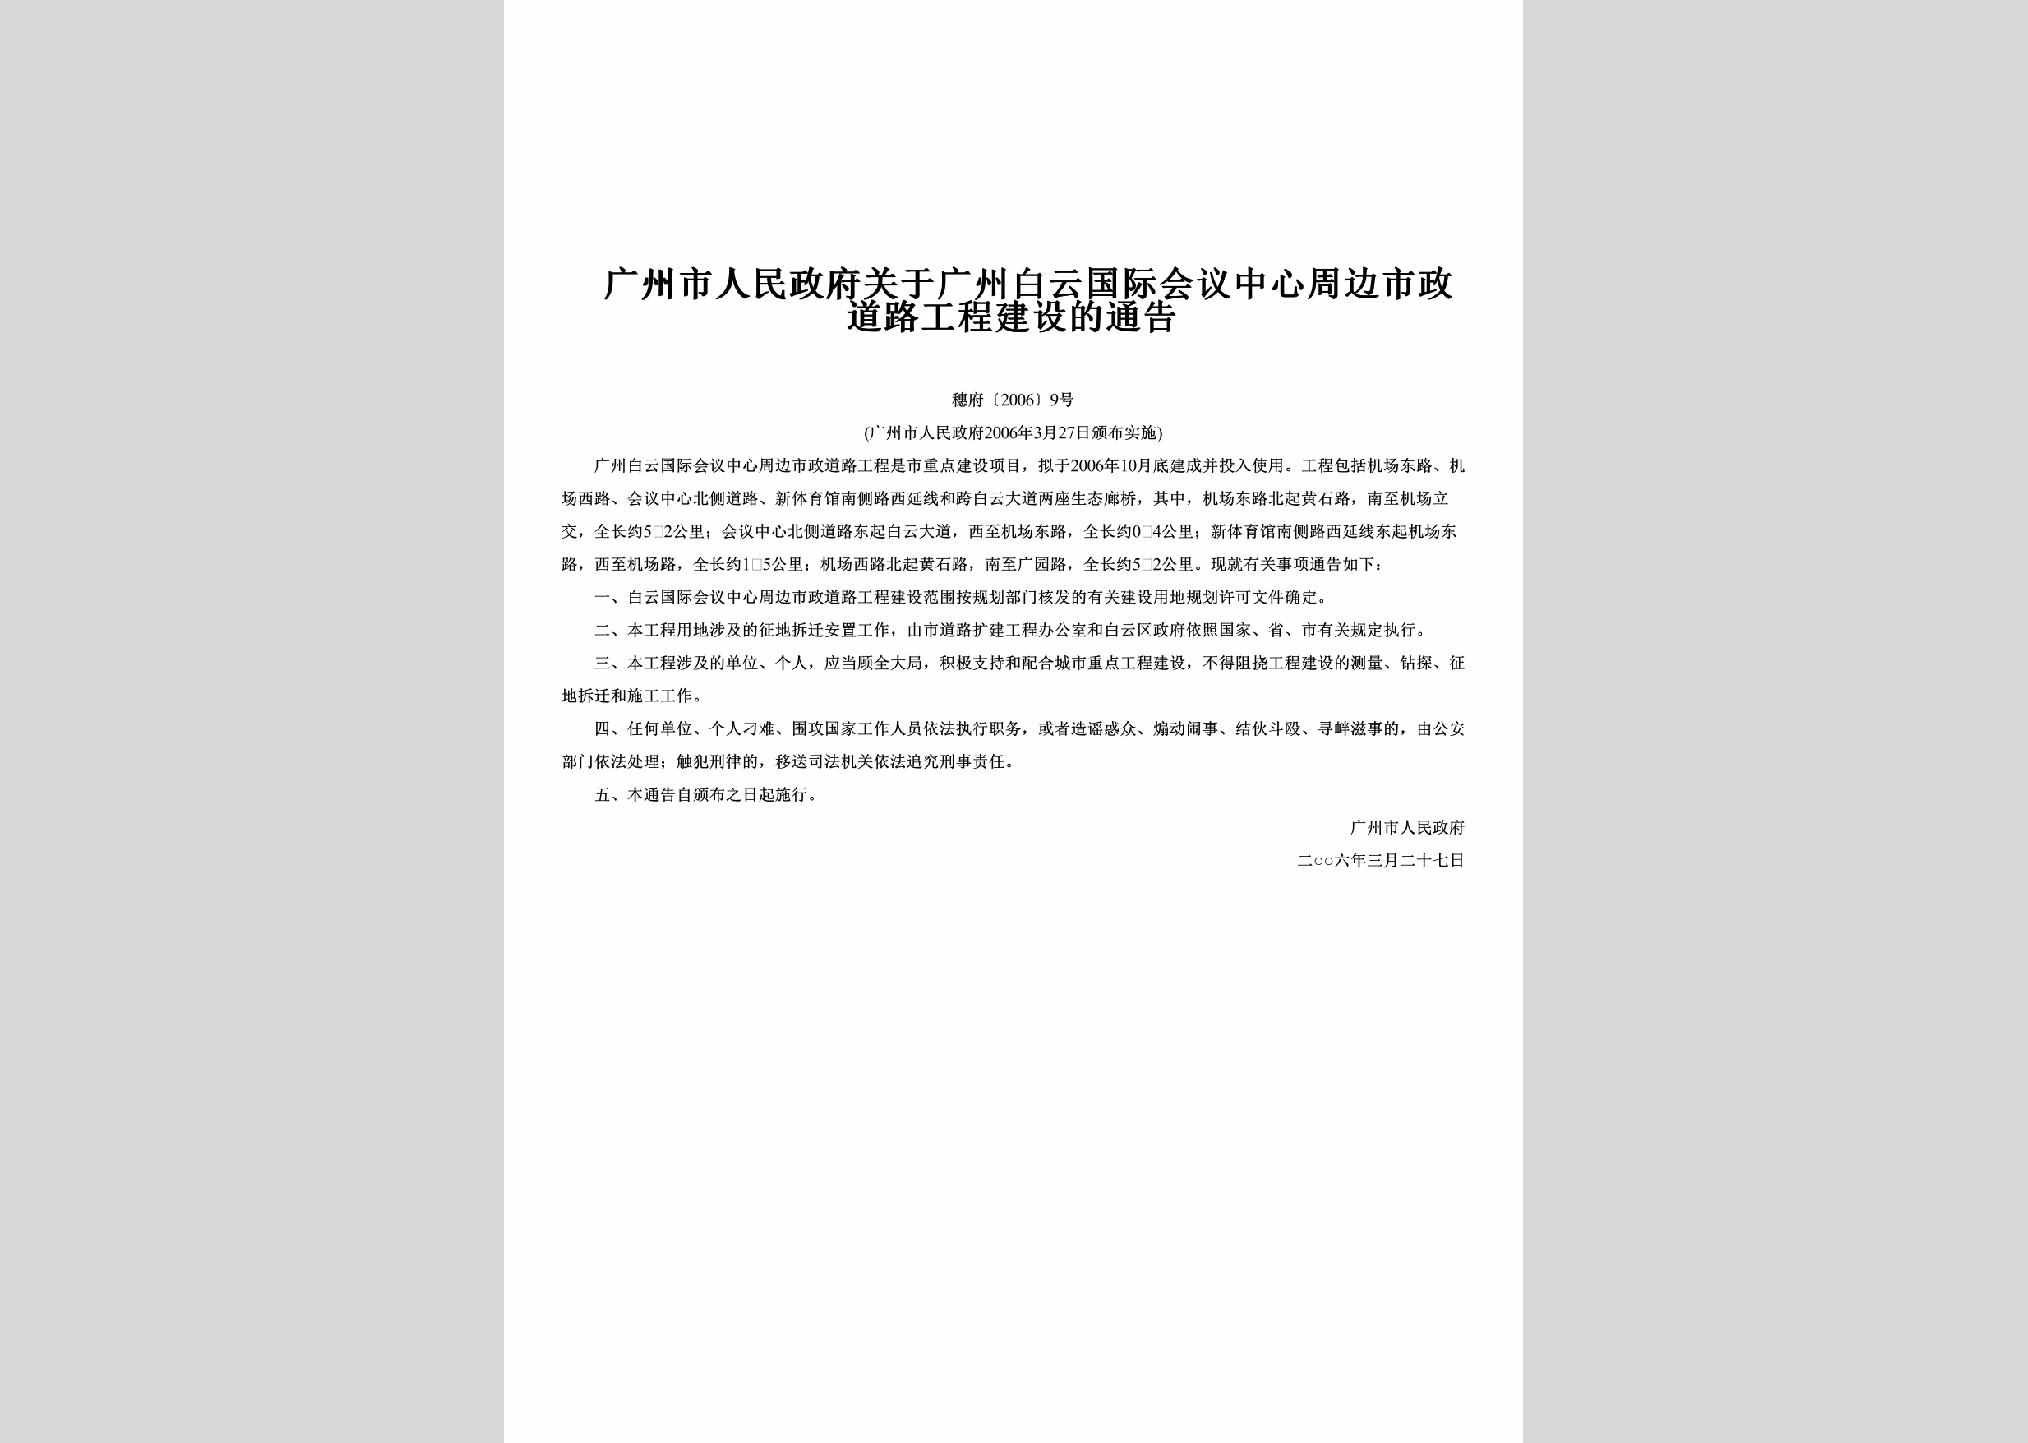 穗府[2006]9号：关于广州白云国际会议中心周边市政道路工程建设的通告